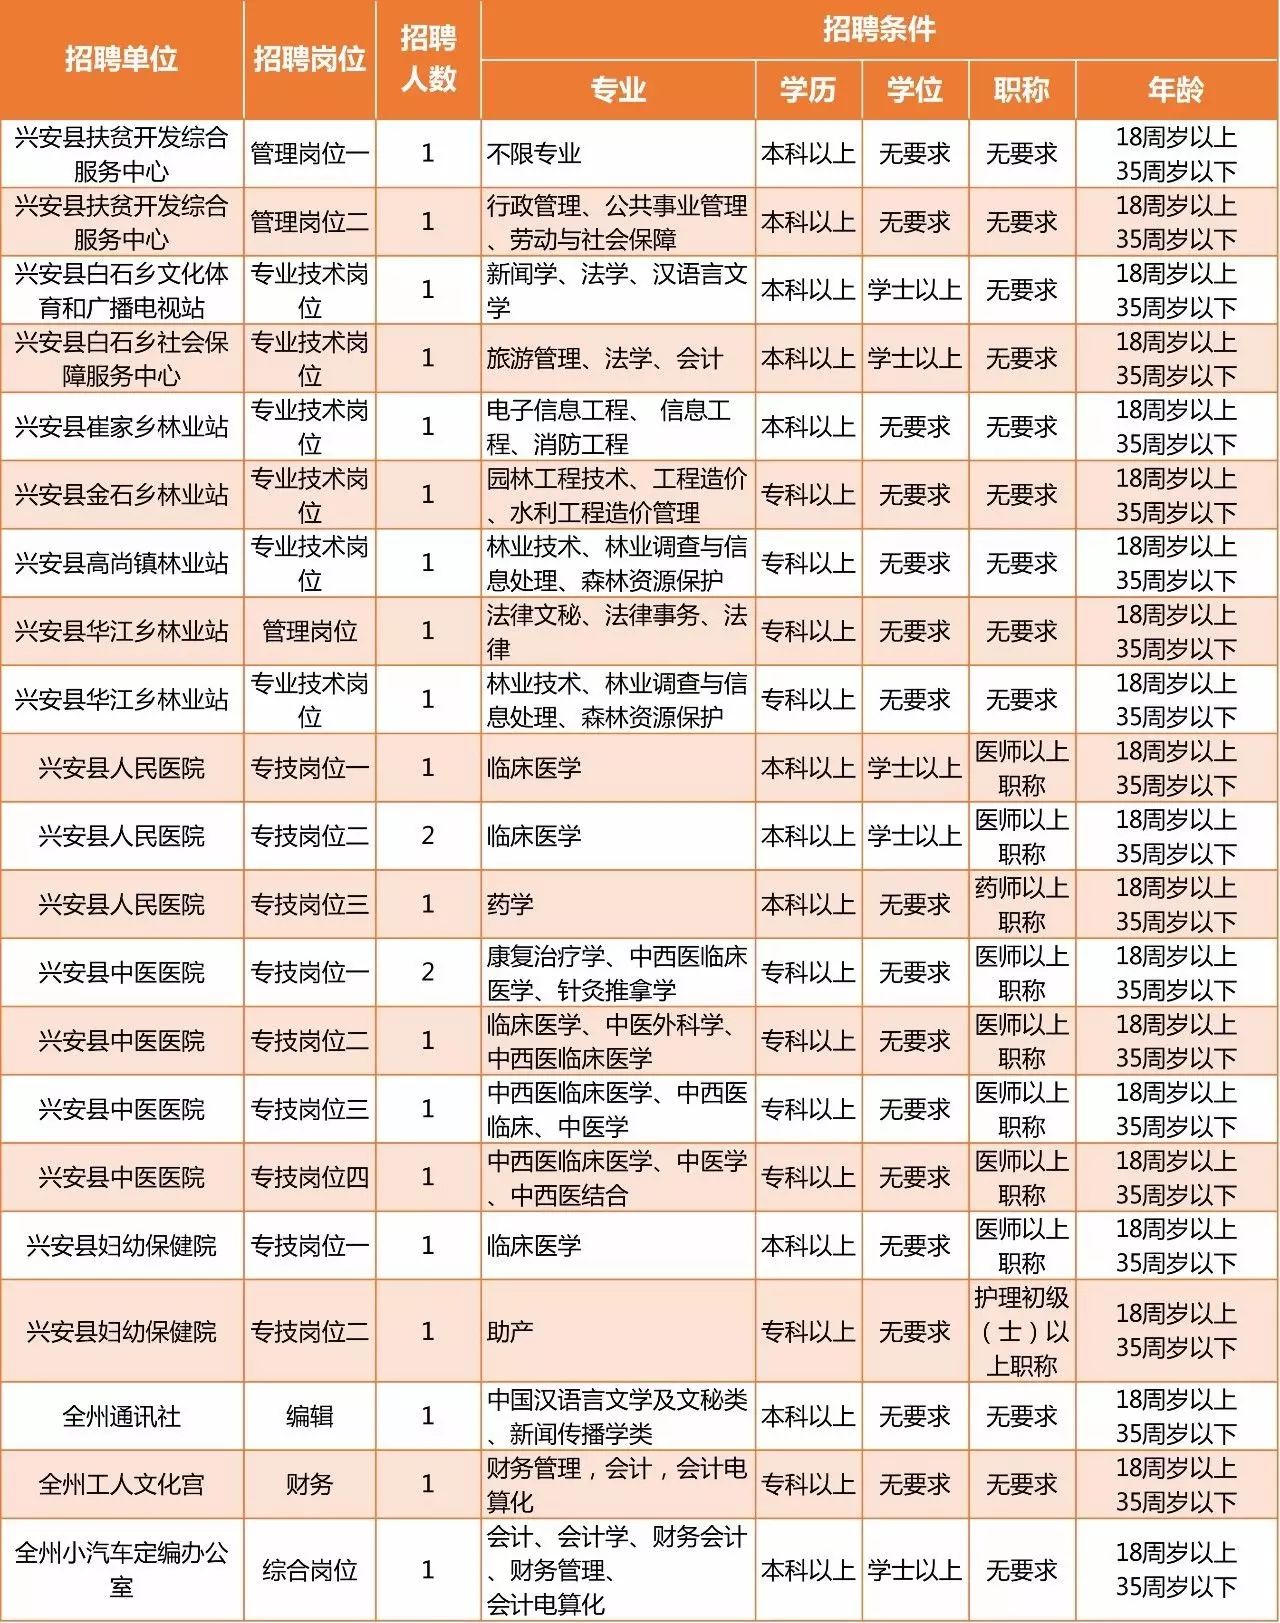 重磅 桂林2017年事业单位招聘公告发布 777个岗位招941人 